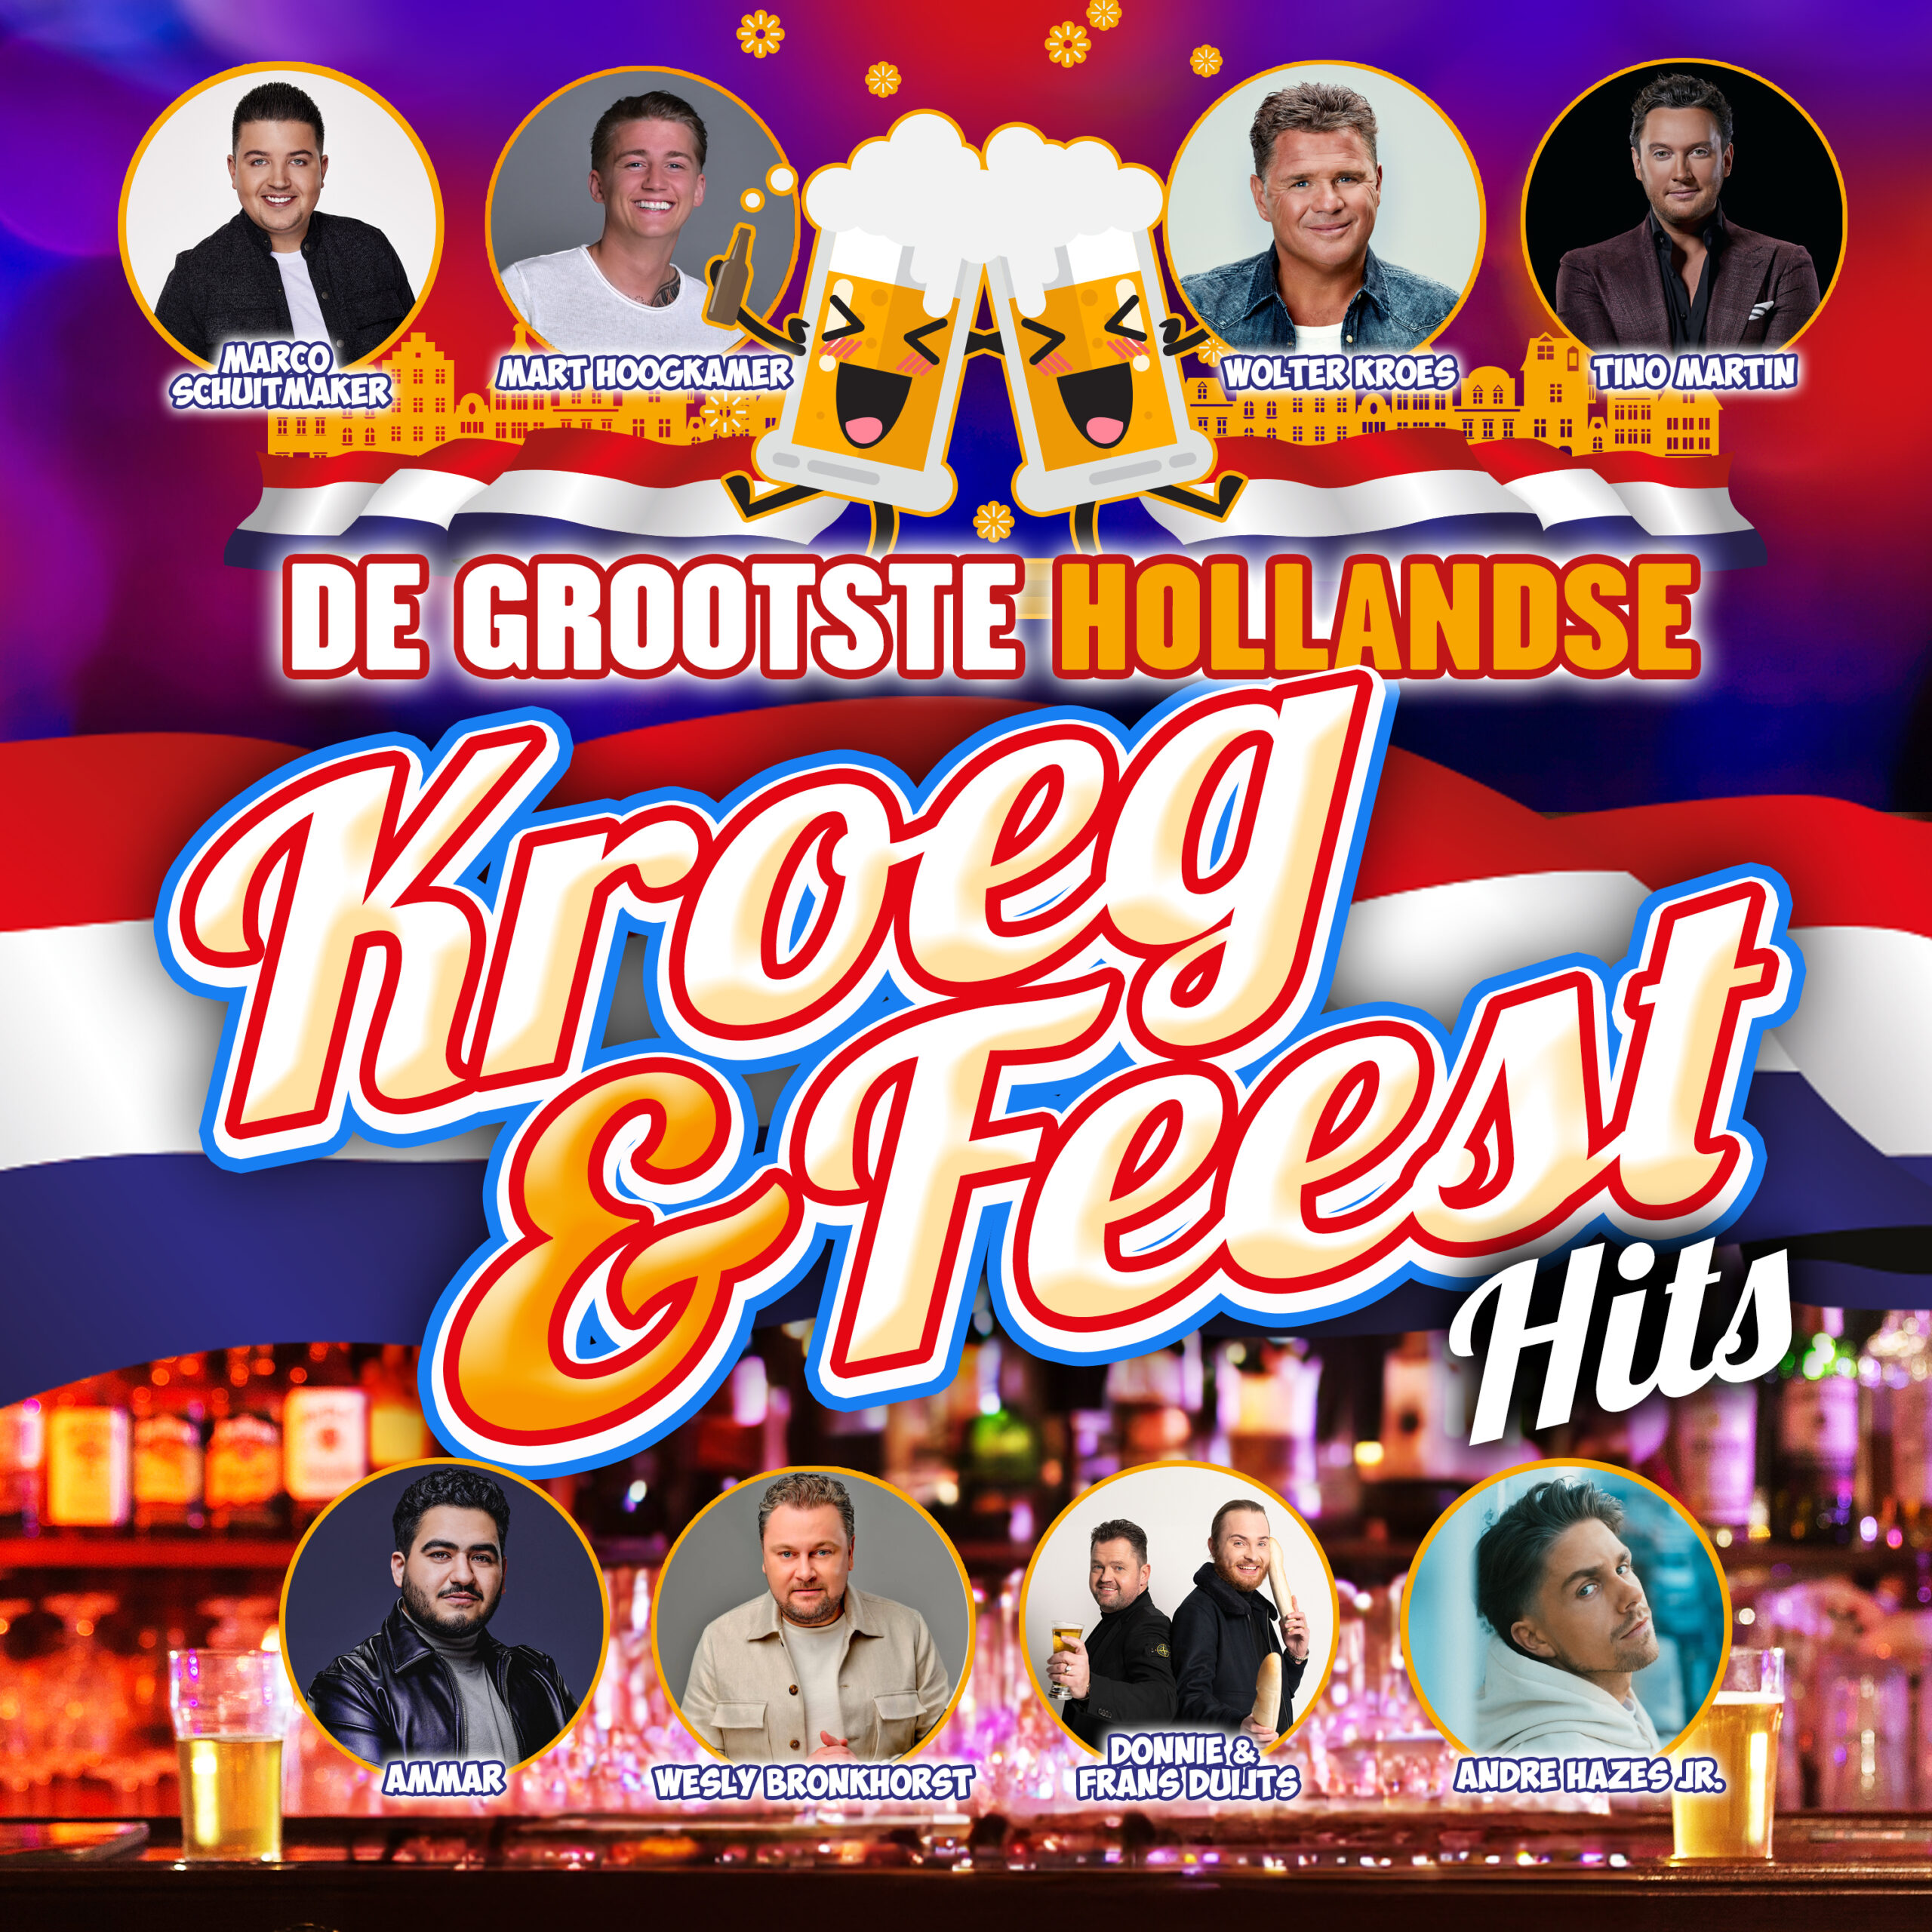 De Grootste Hollandse Kroeg & Feest Hits